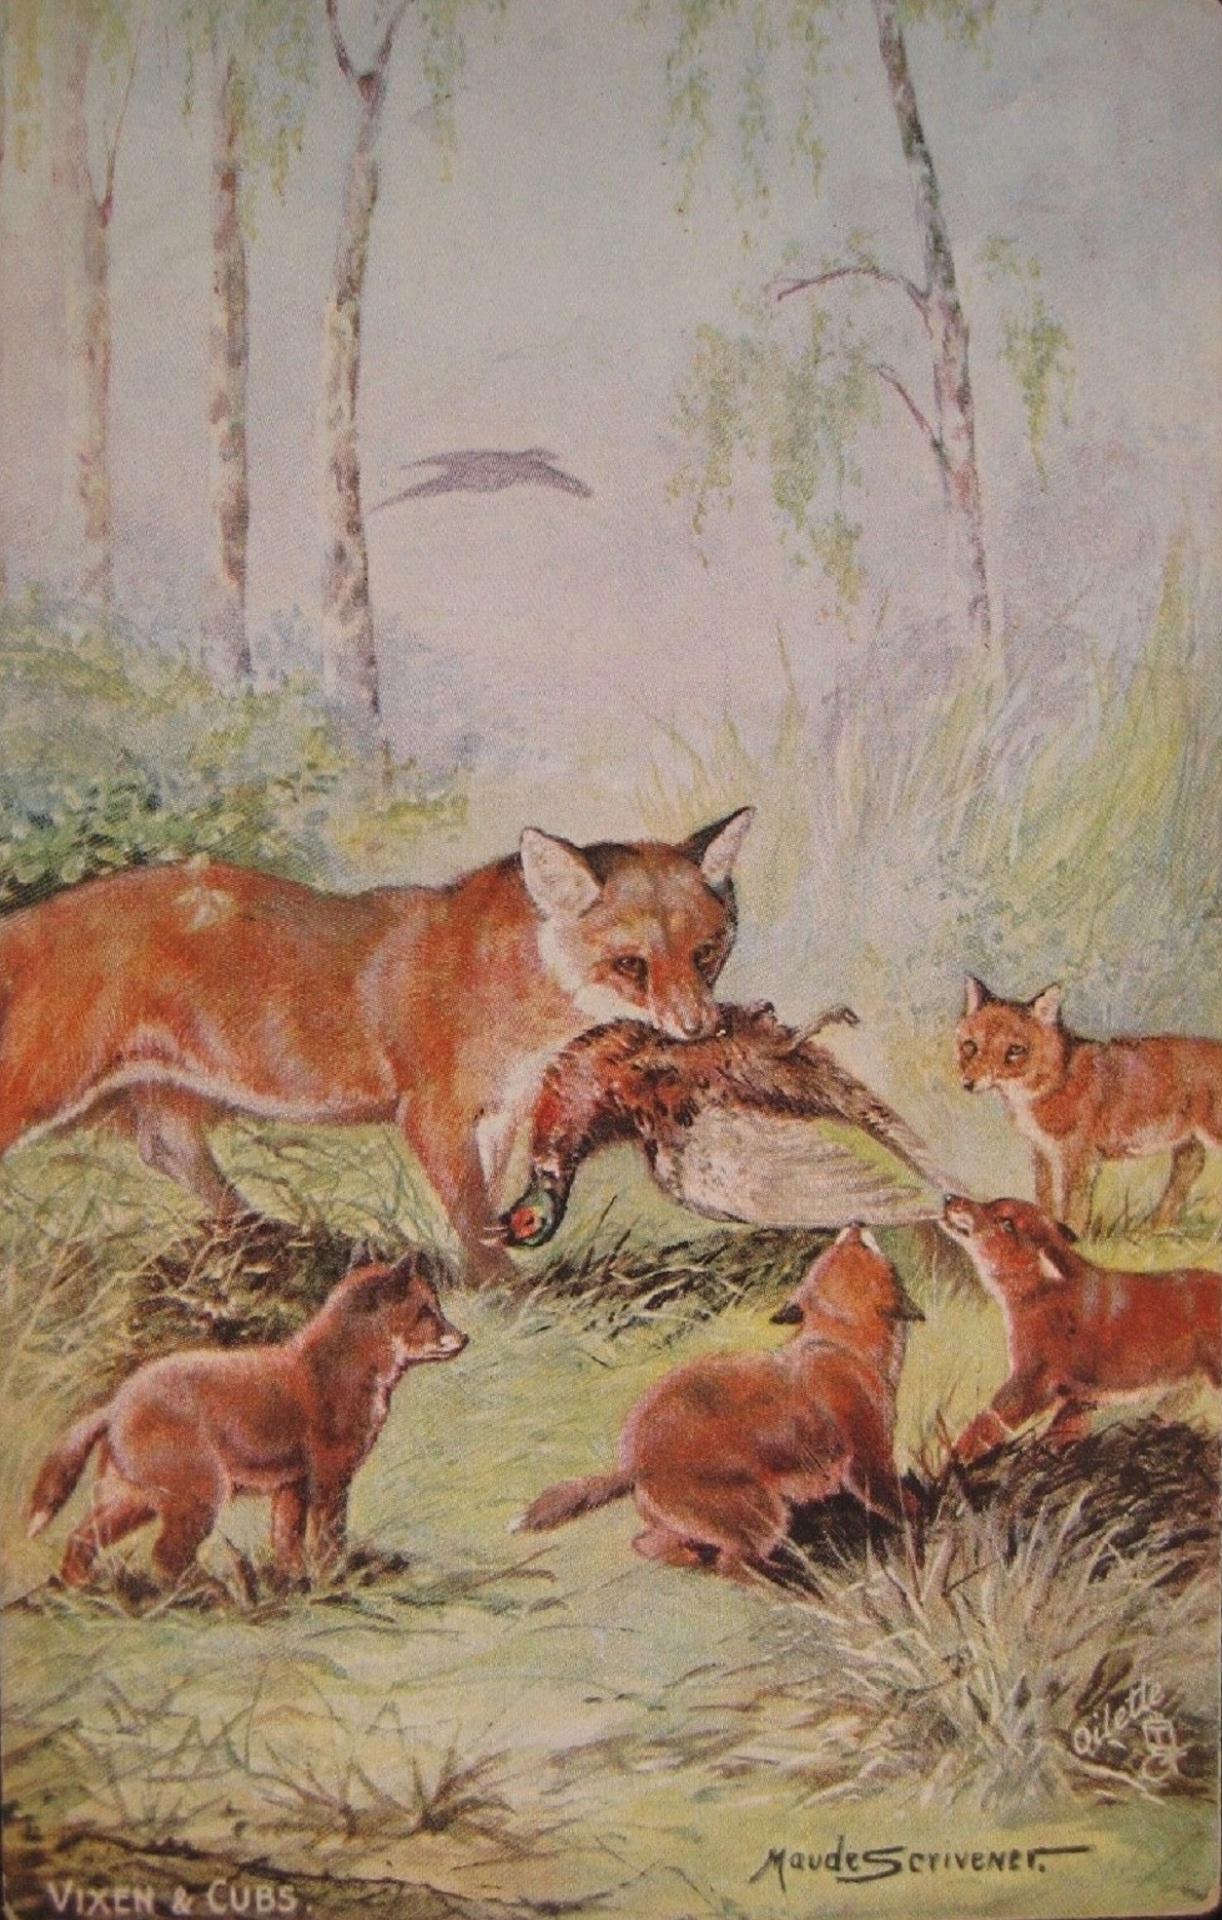 Vixen & Cubs Fox By Maude Scrivener